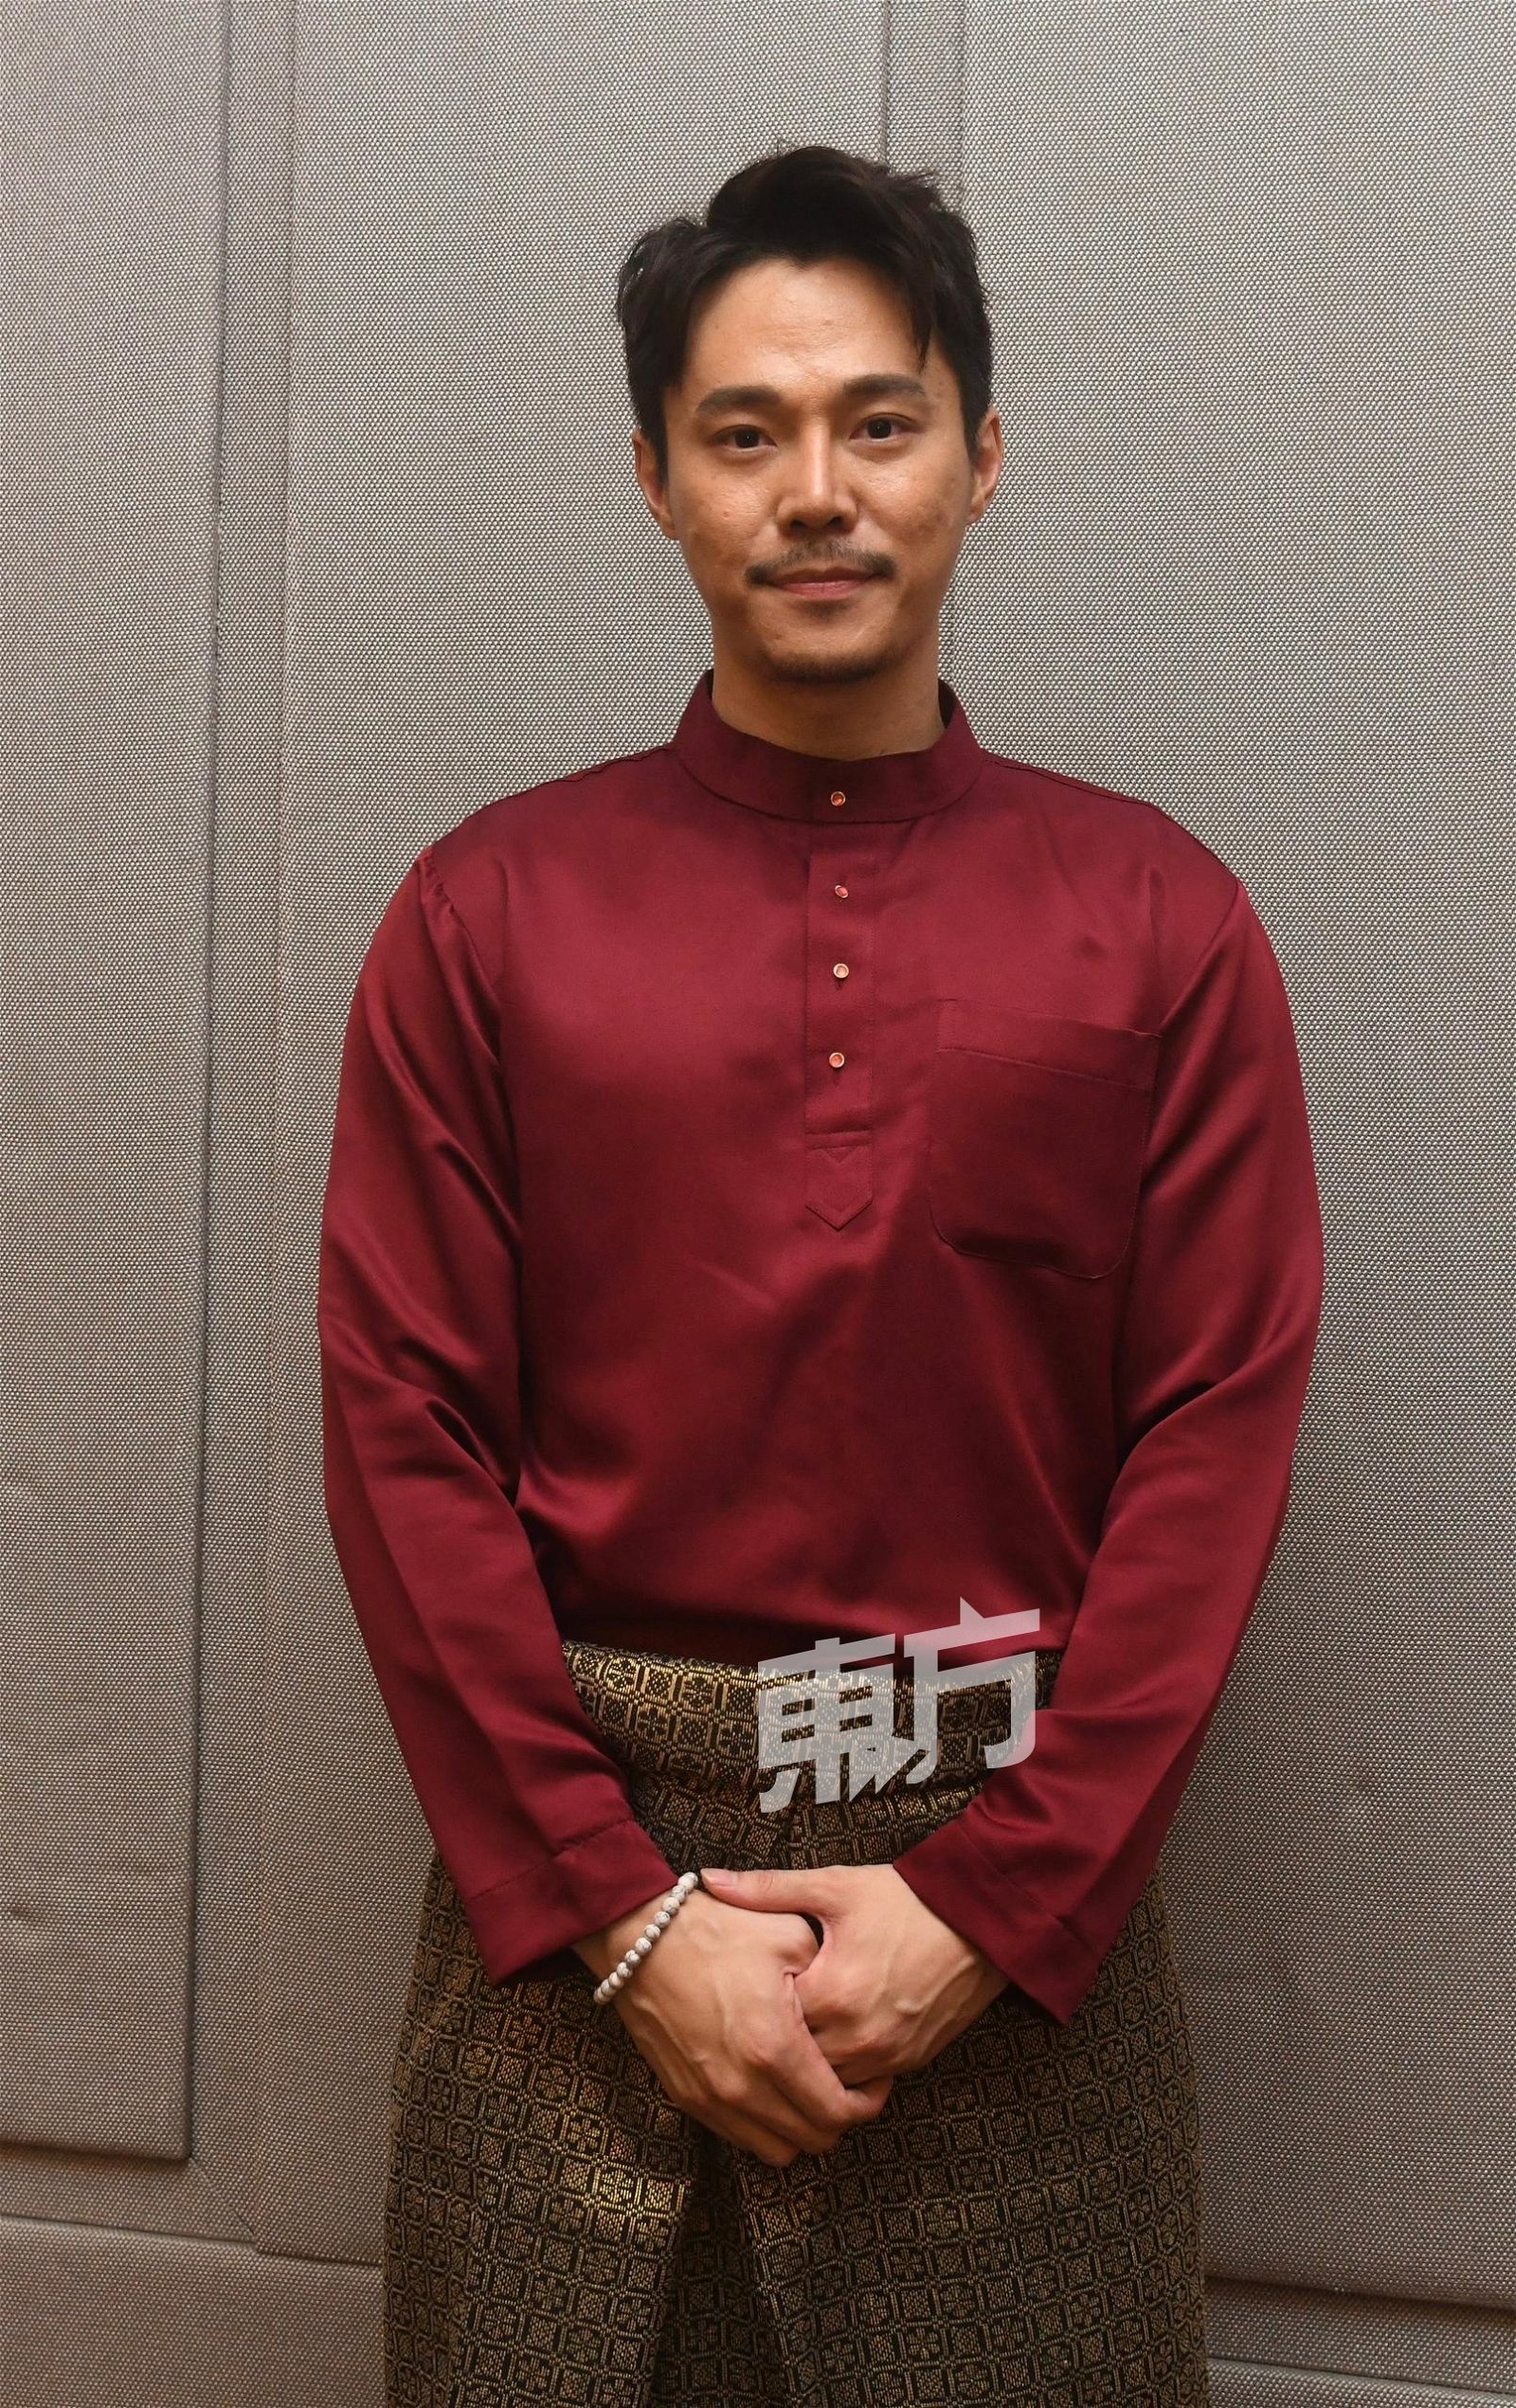 李浩菖首次参演马来电影《Takluk》，他谓也想趁此机会开拓马来市场，未来能朝更多元化发展。